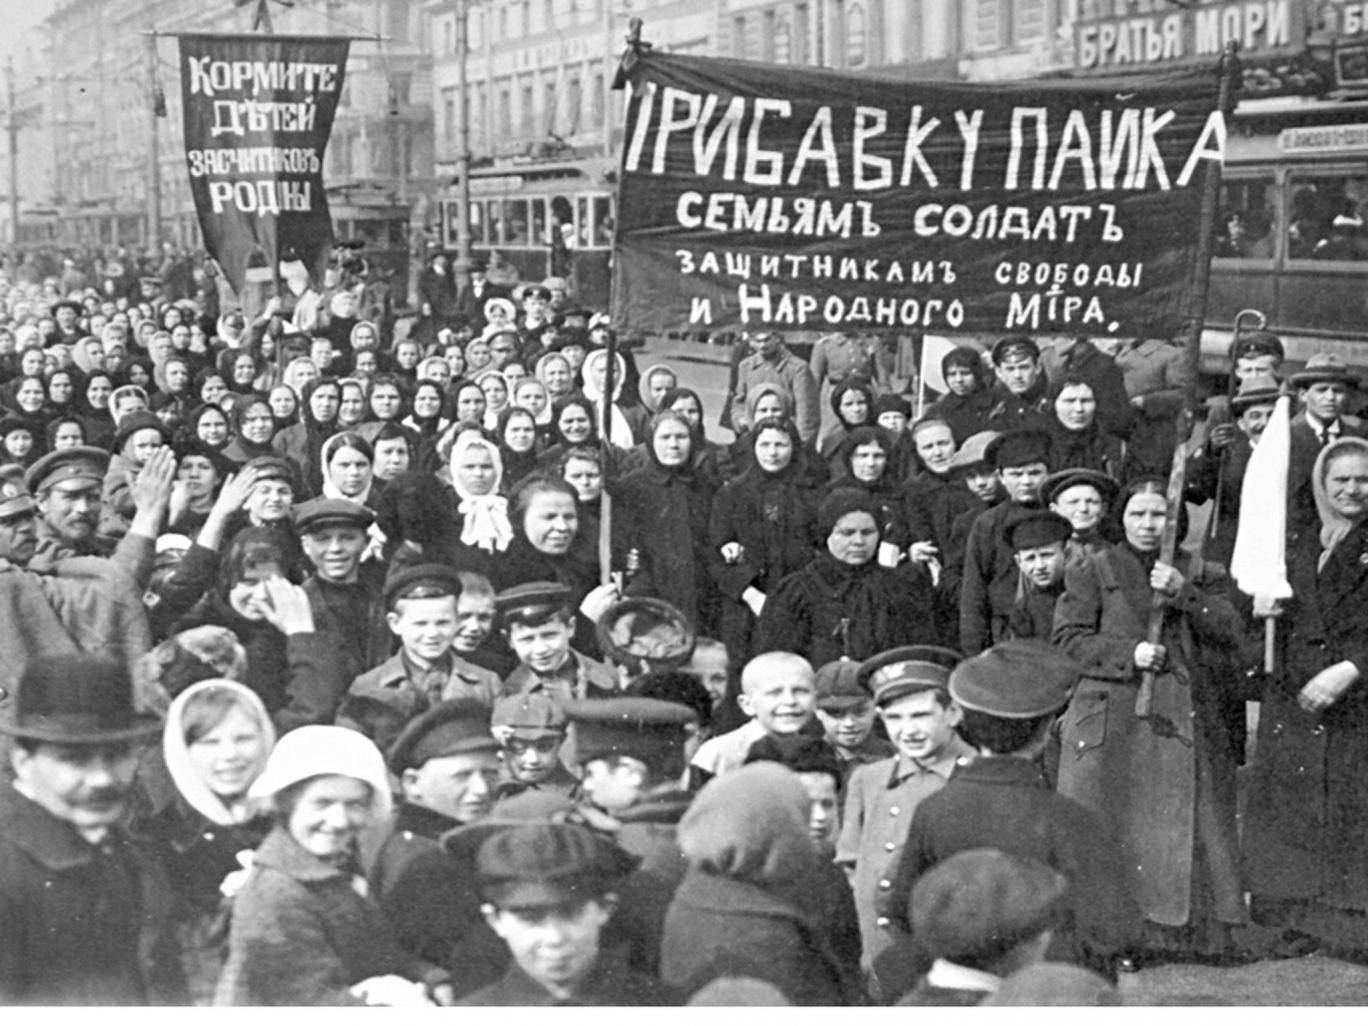 Petrograd textile workers Image public domain